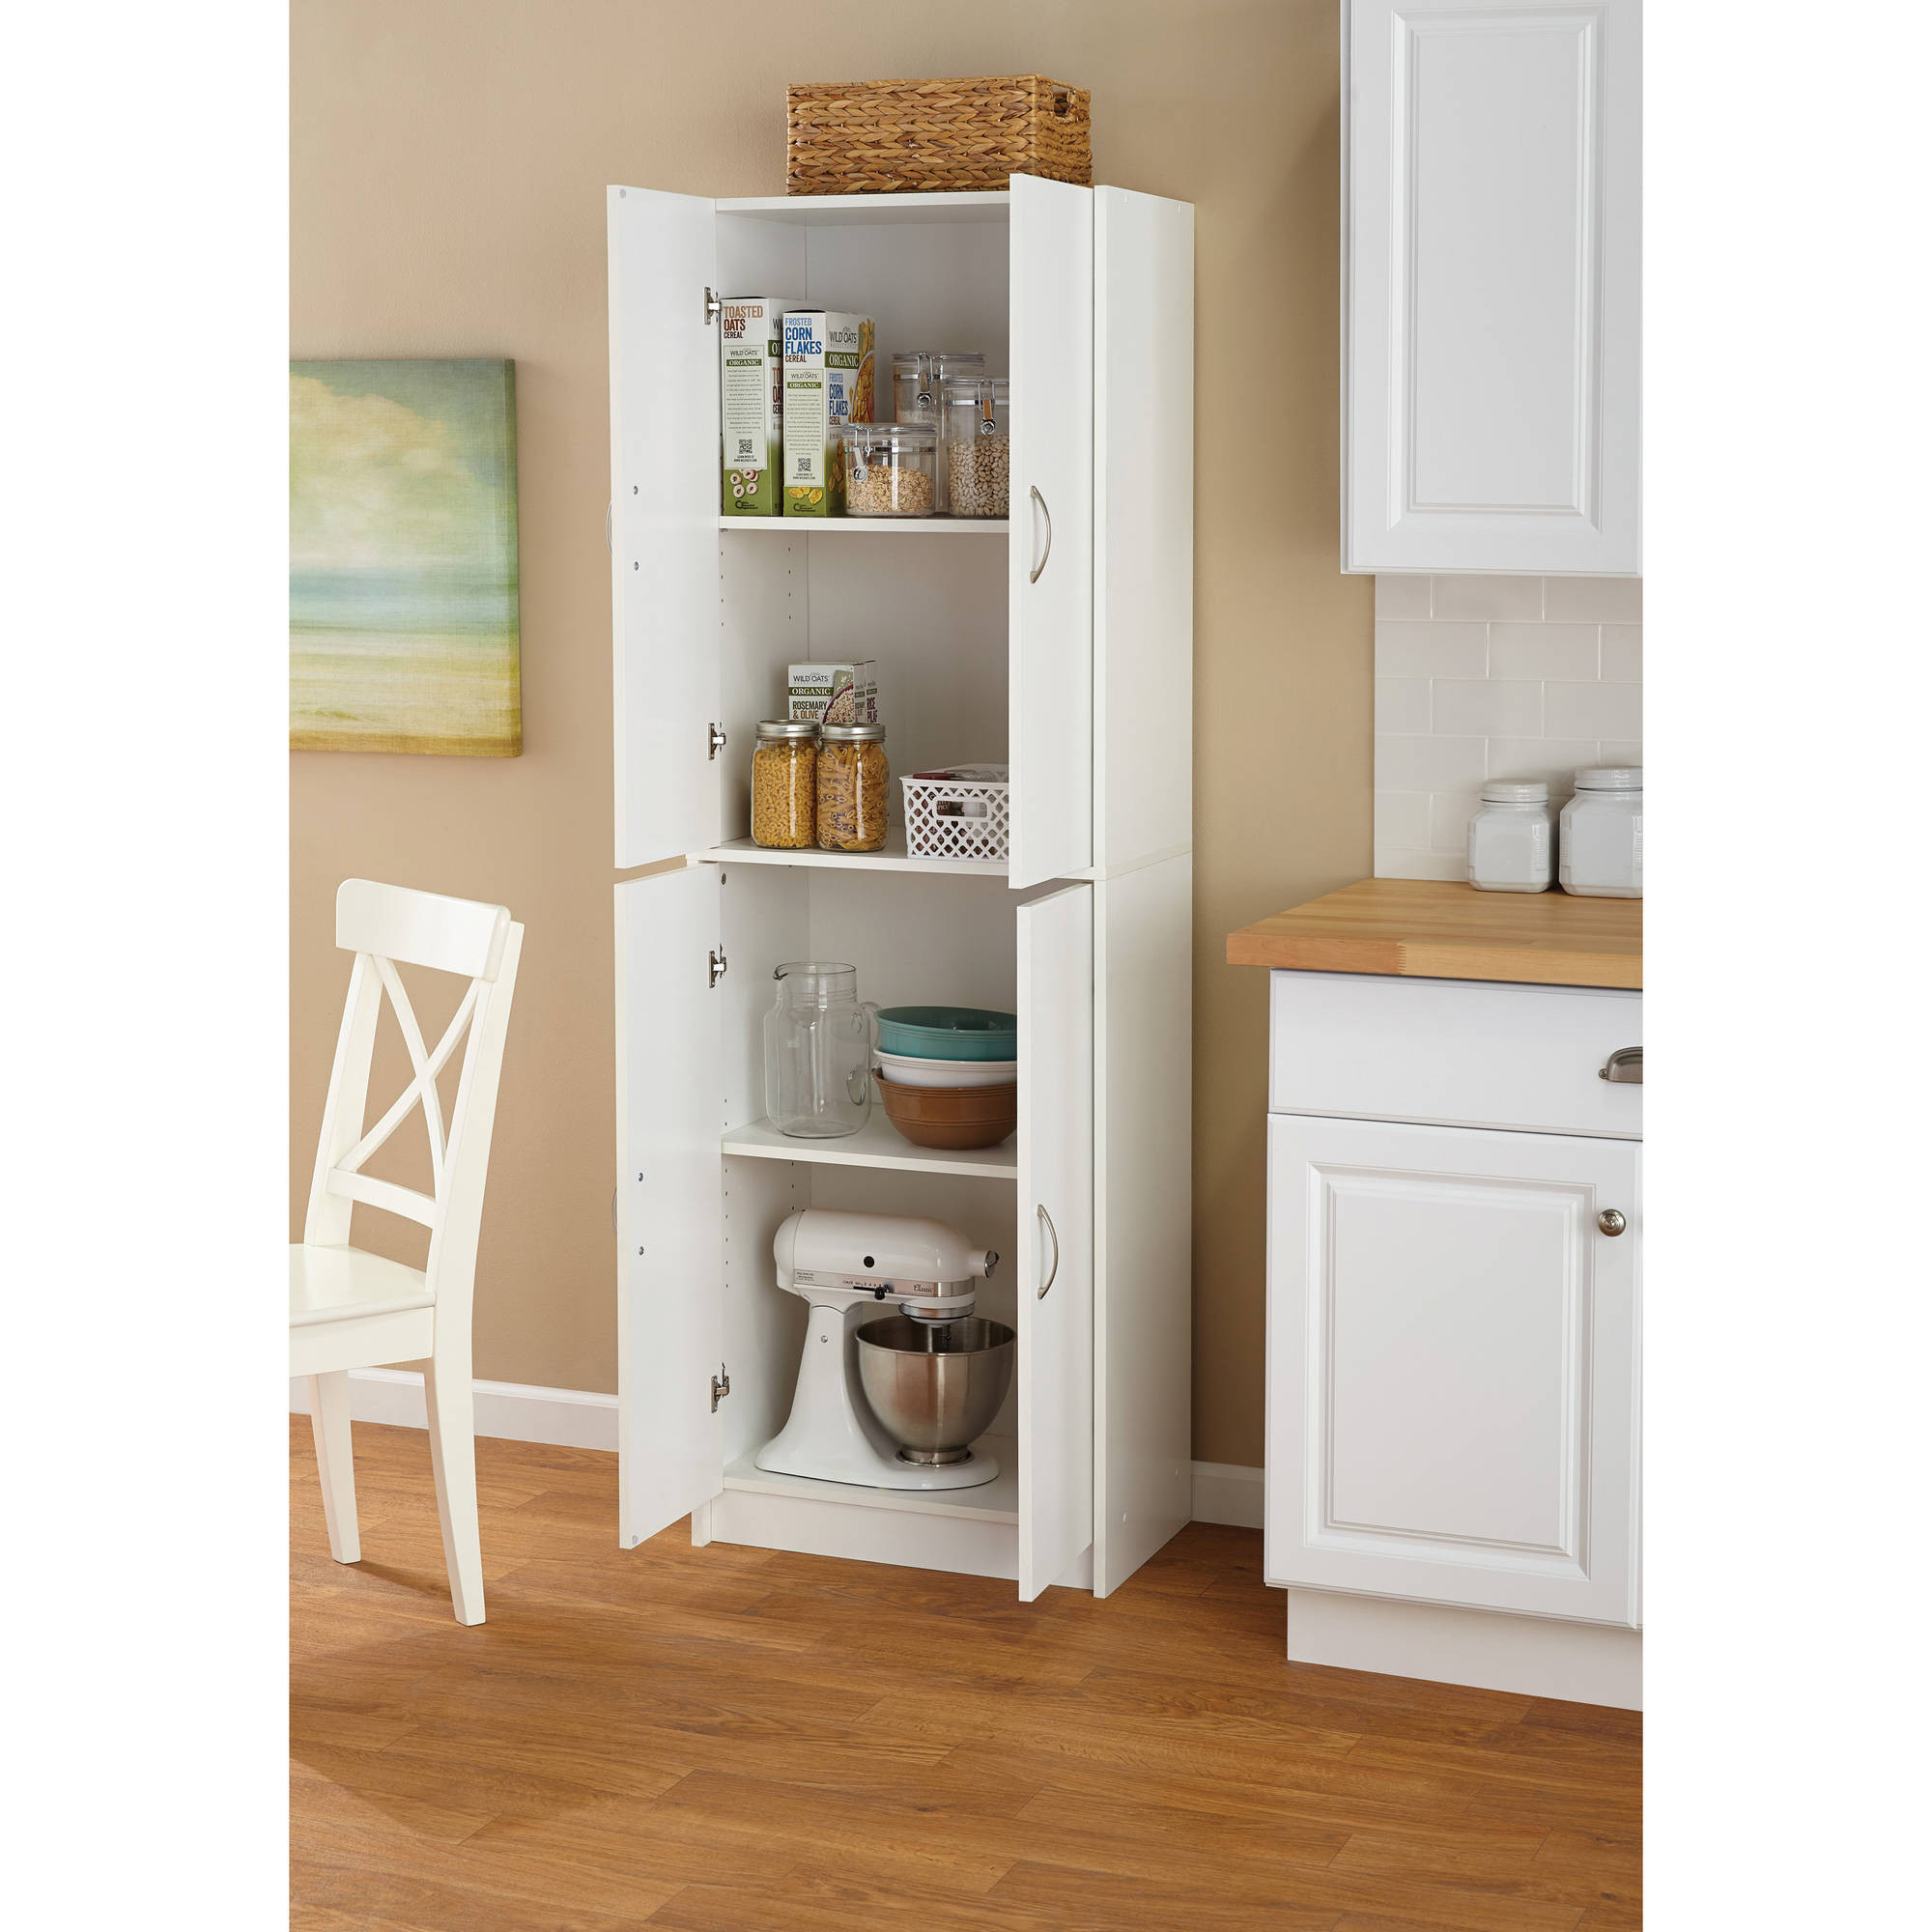 Wooden Kitchen Storage Cabinets
 Tall Storage Cabinet Kitchen Cupboard Pantry Food Storage